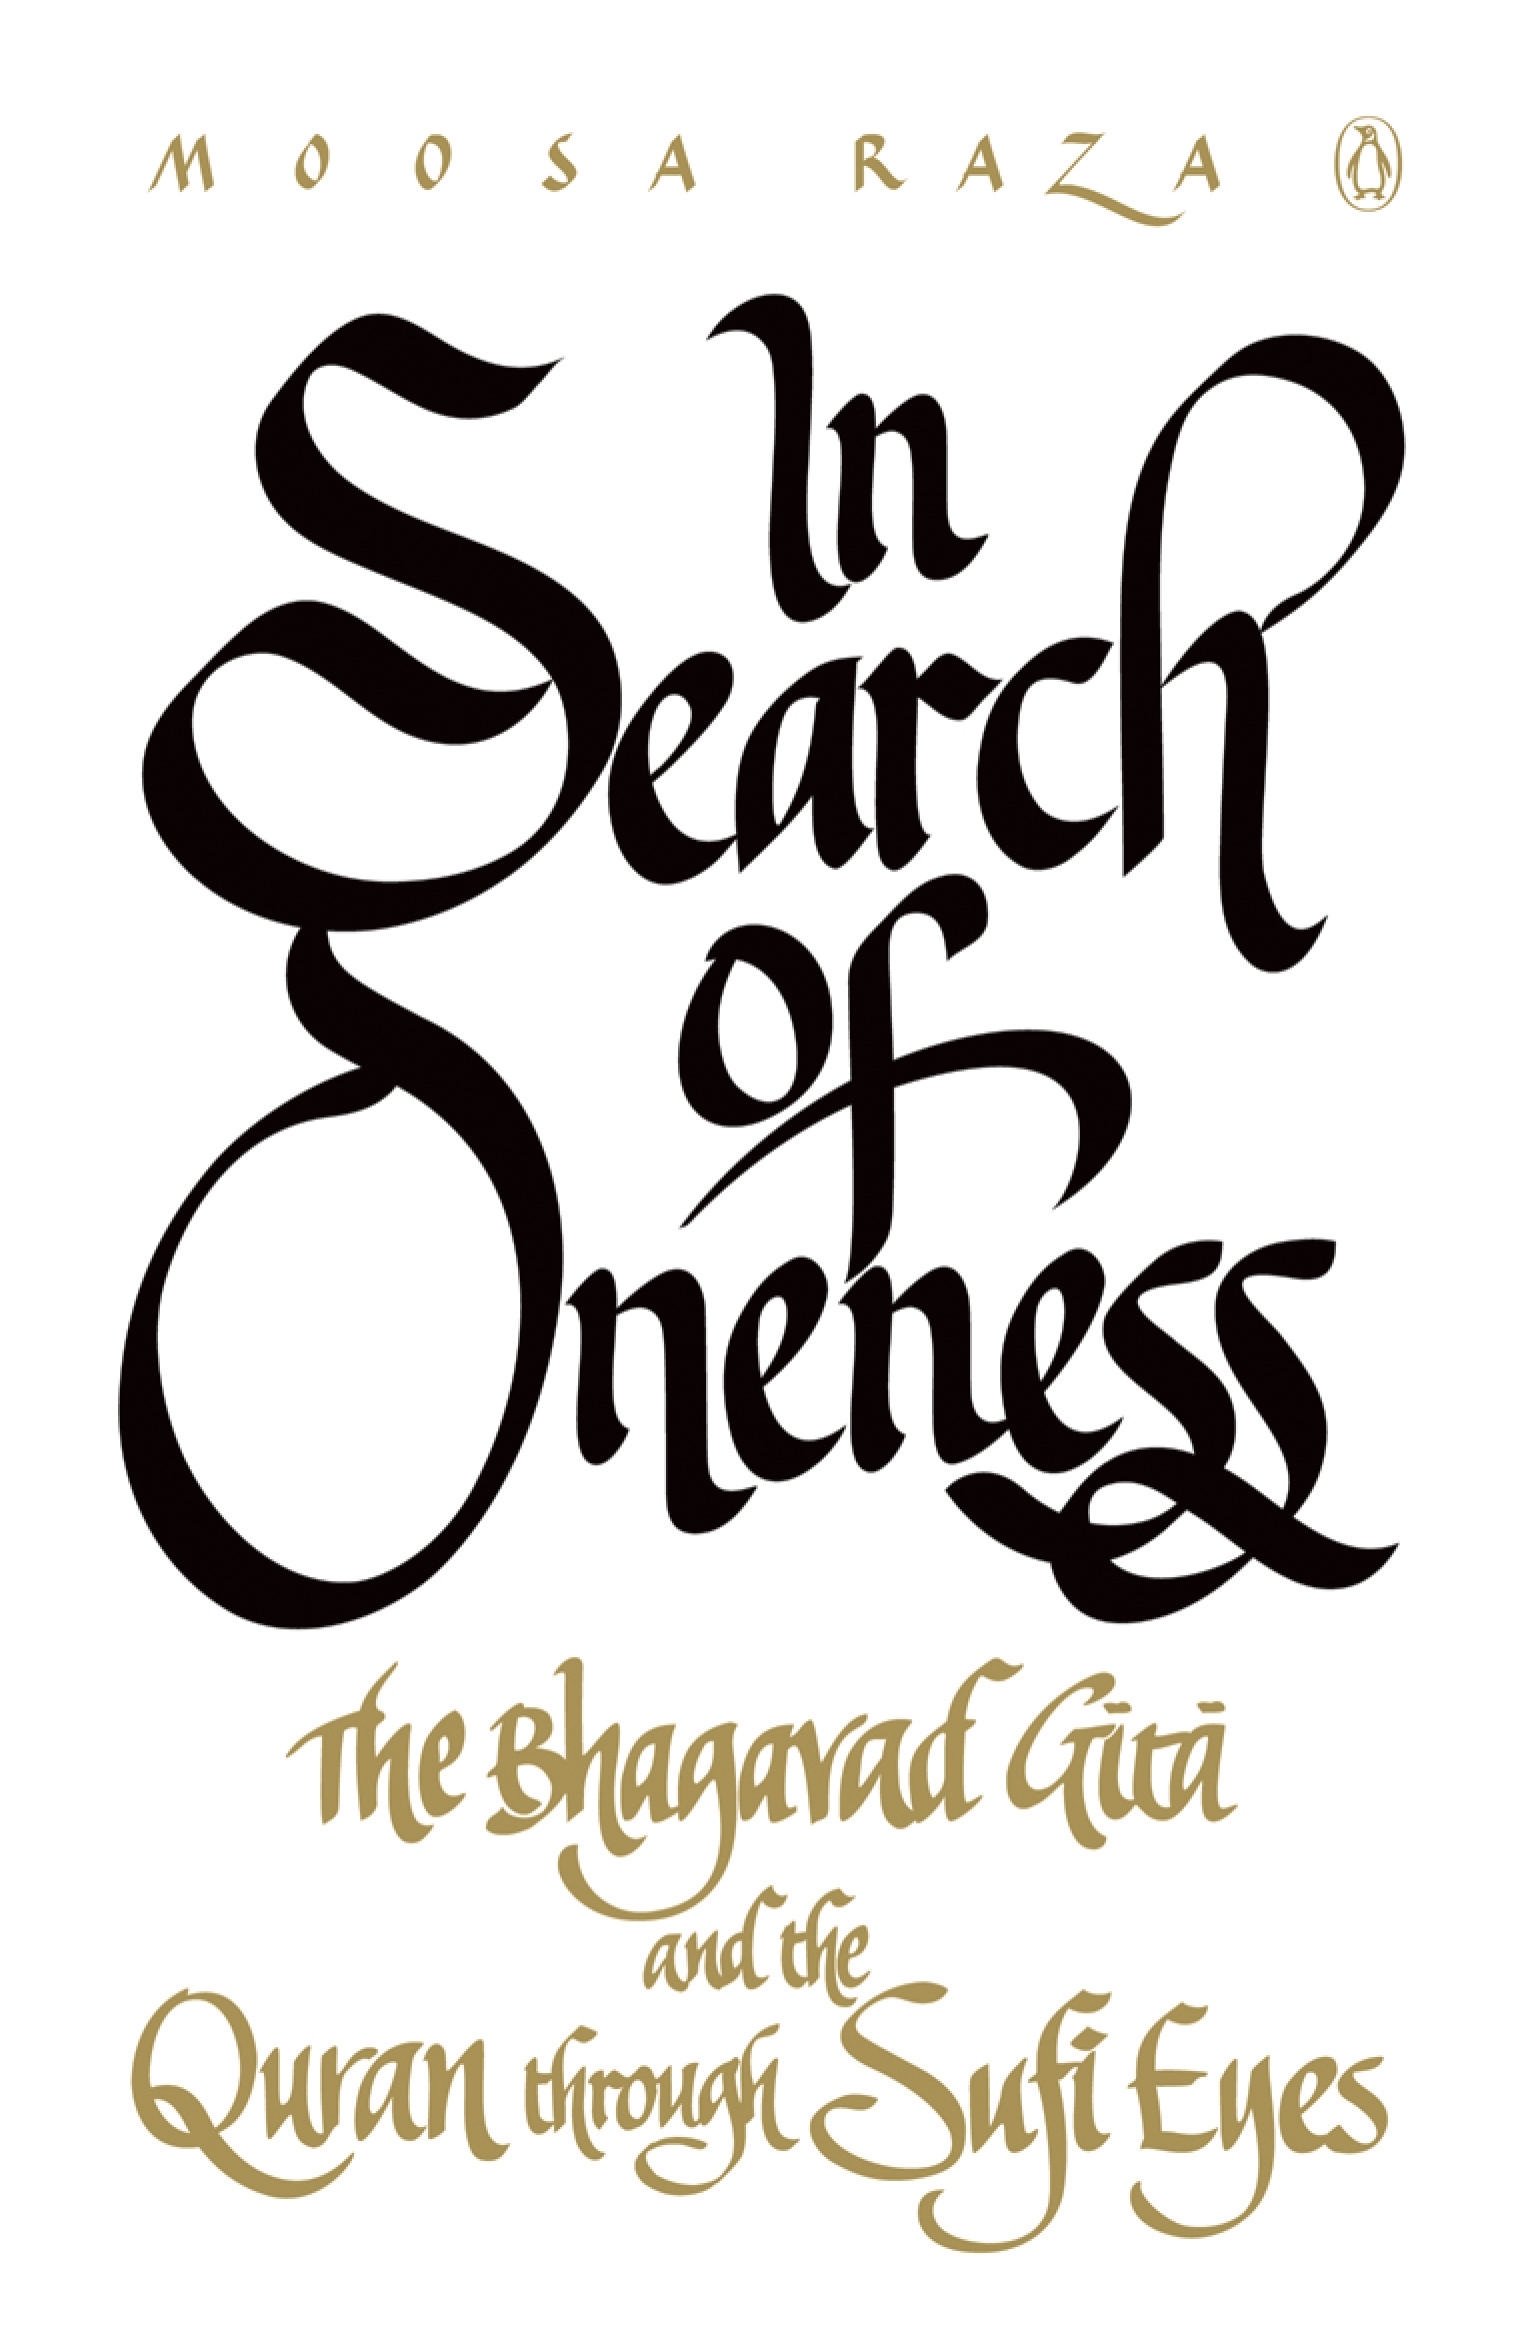 Umschlag von Moosa Raza's "In Search of Oneness. The Bhagavad Gita and The Quran Through Sufi Eyes", erschienen bei Penguin